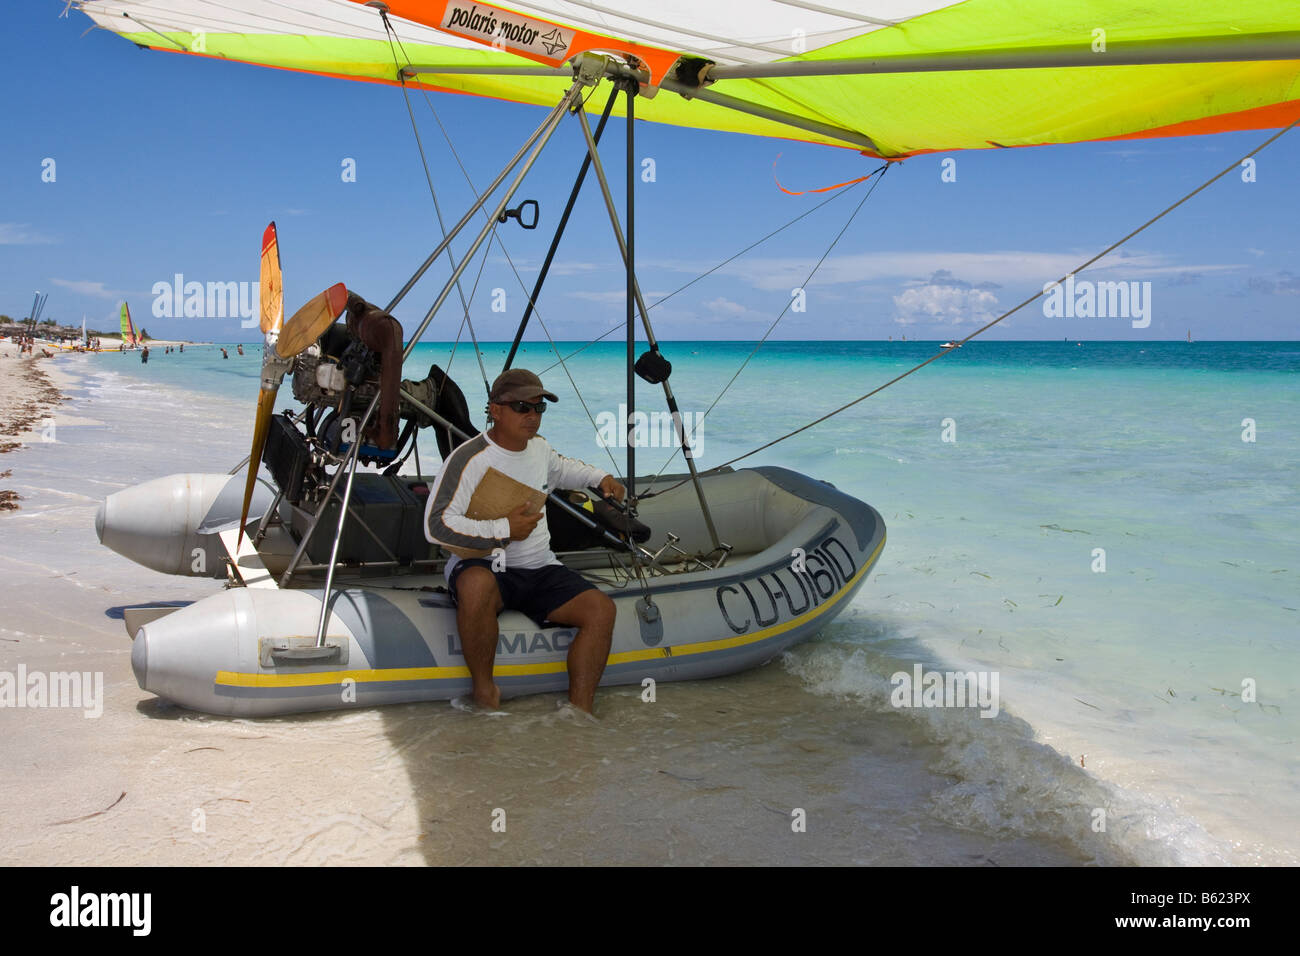 Pilota di motorizzato di deltaplano in attesa di passeggeri su una spiaggia, UL-Trike, ultra leggero in aereo con una vita in barca, Varadero, Foto Stock